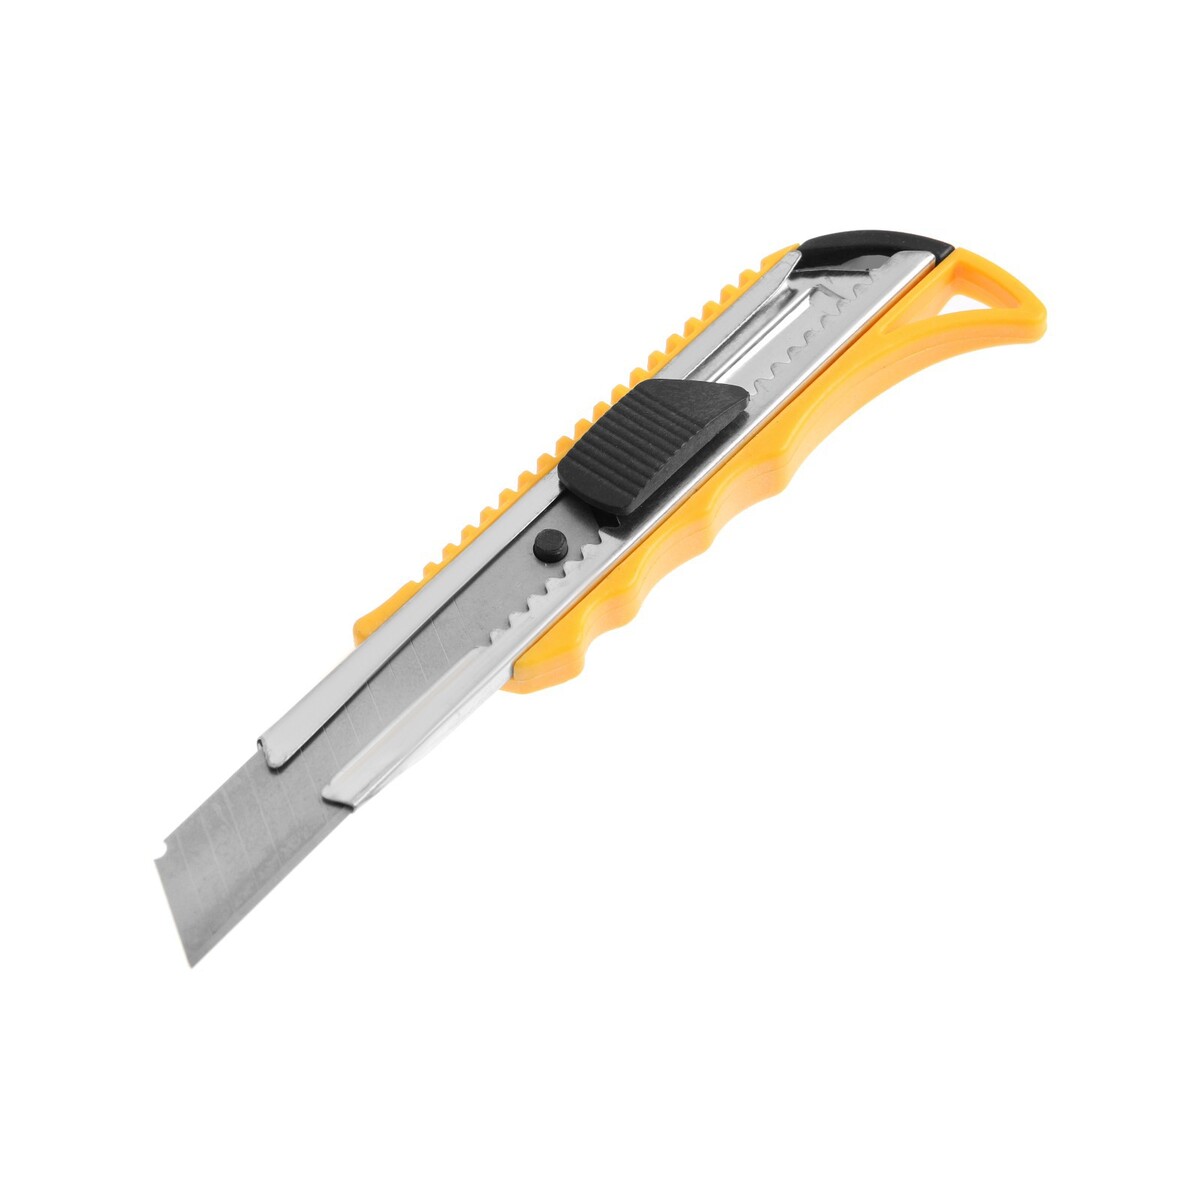 Нож универсальный тундра, металлическая направляющая, квадратный фиксатор, усиленный, 18 мм нож универсальный тундра усиленный металлический квадратный фиксатор 18 мм